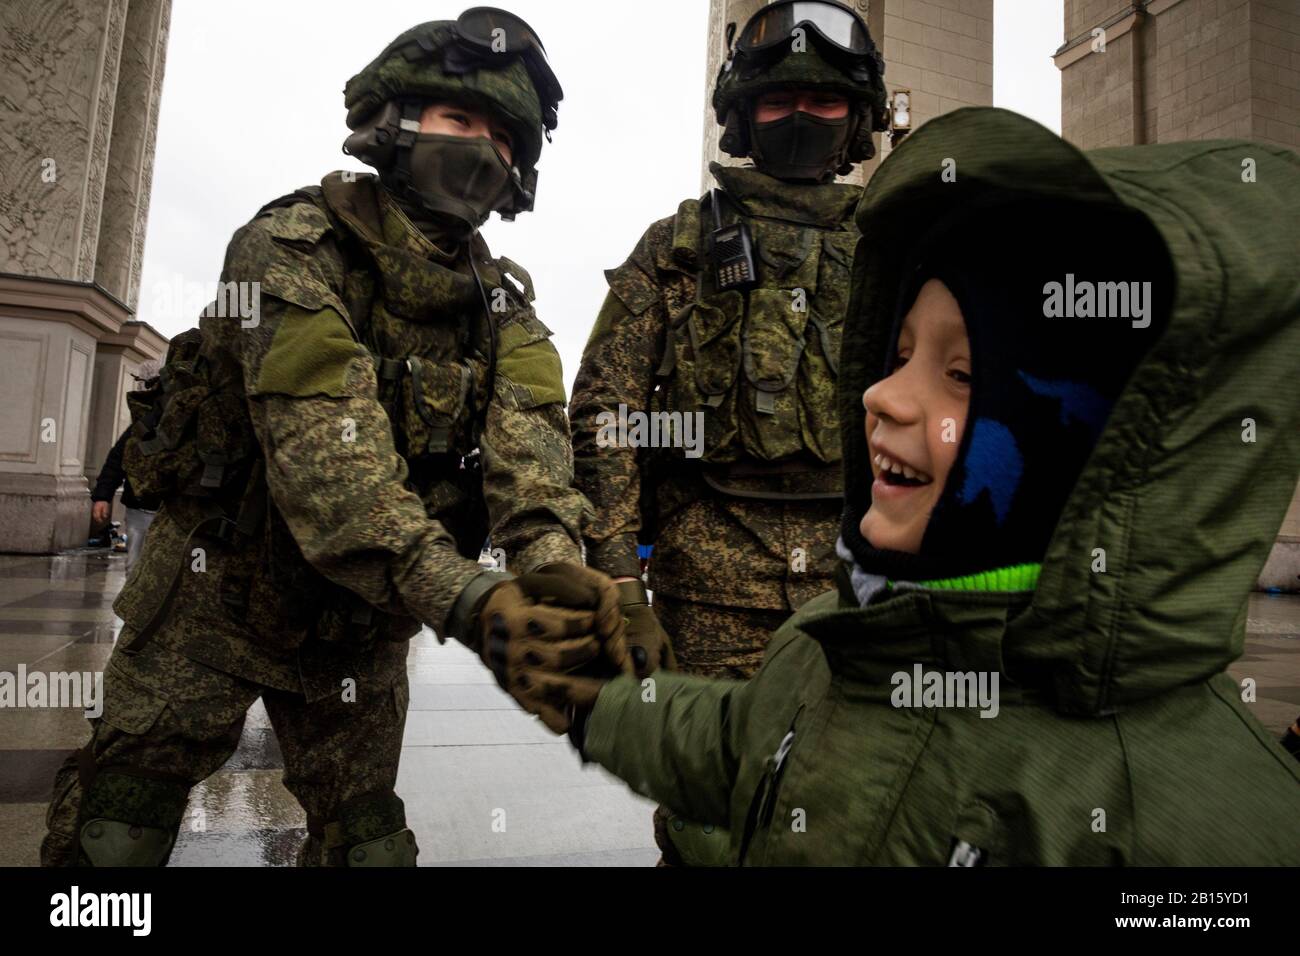 Uniforme del ejército ruso e imágenes de alta resolución - Alamy